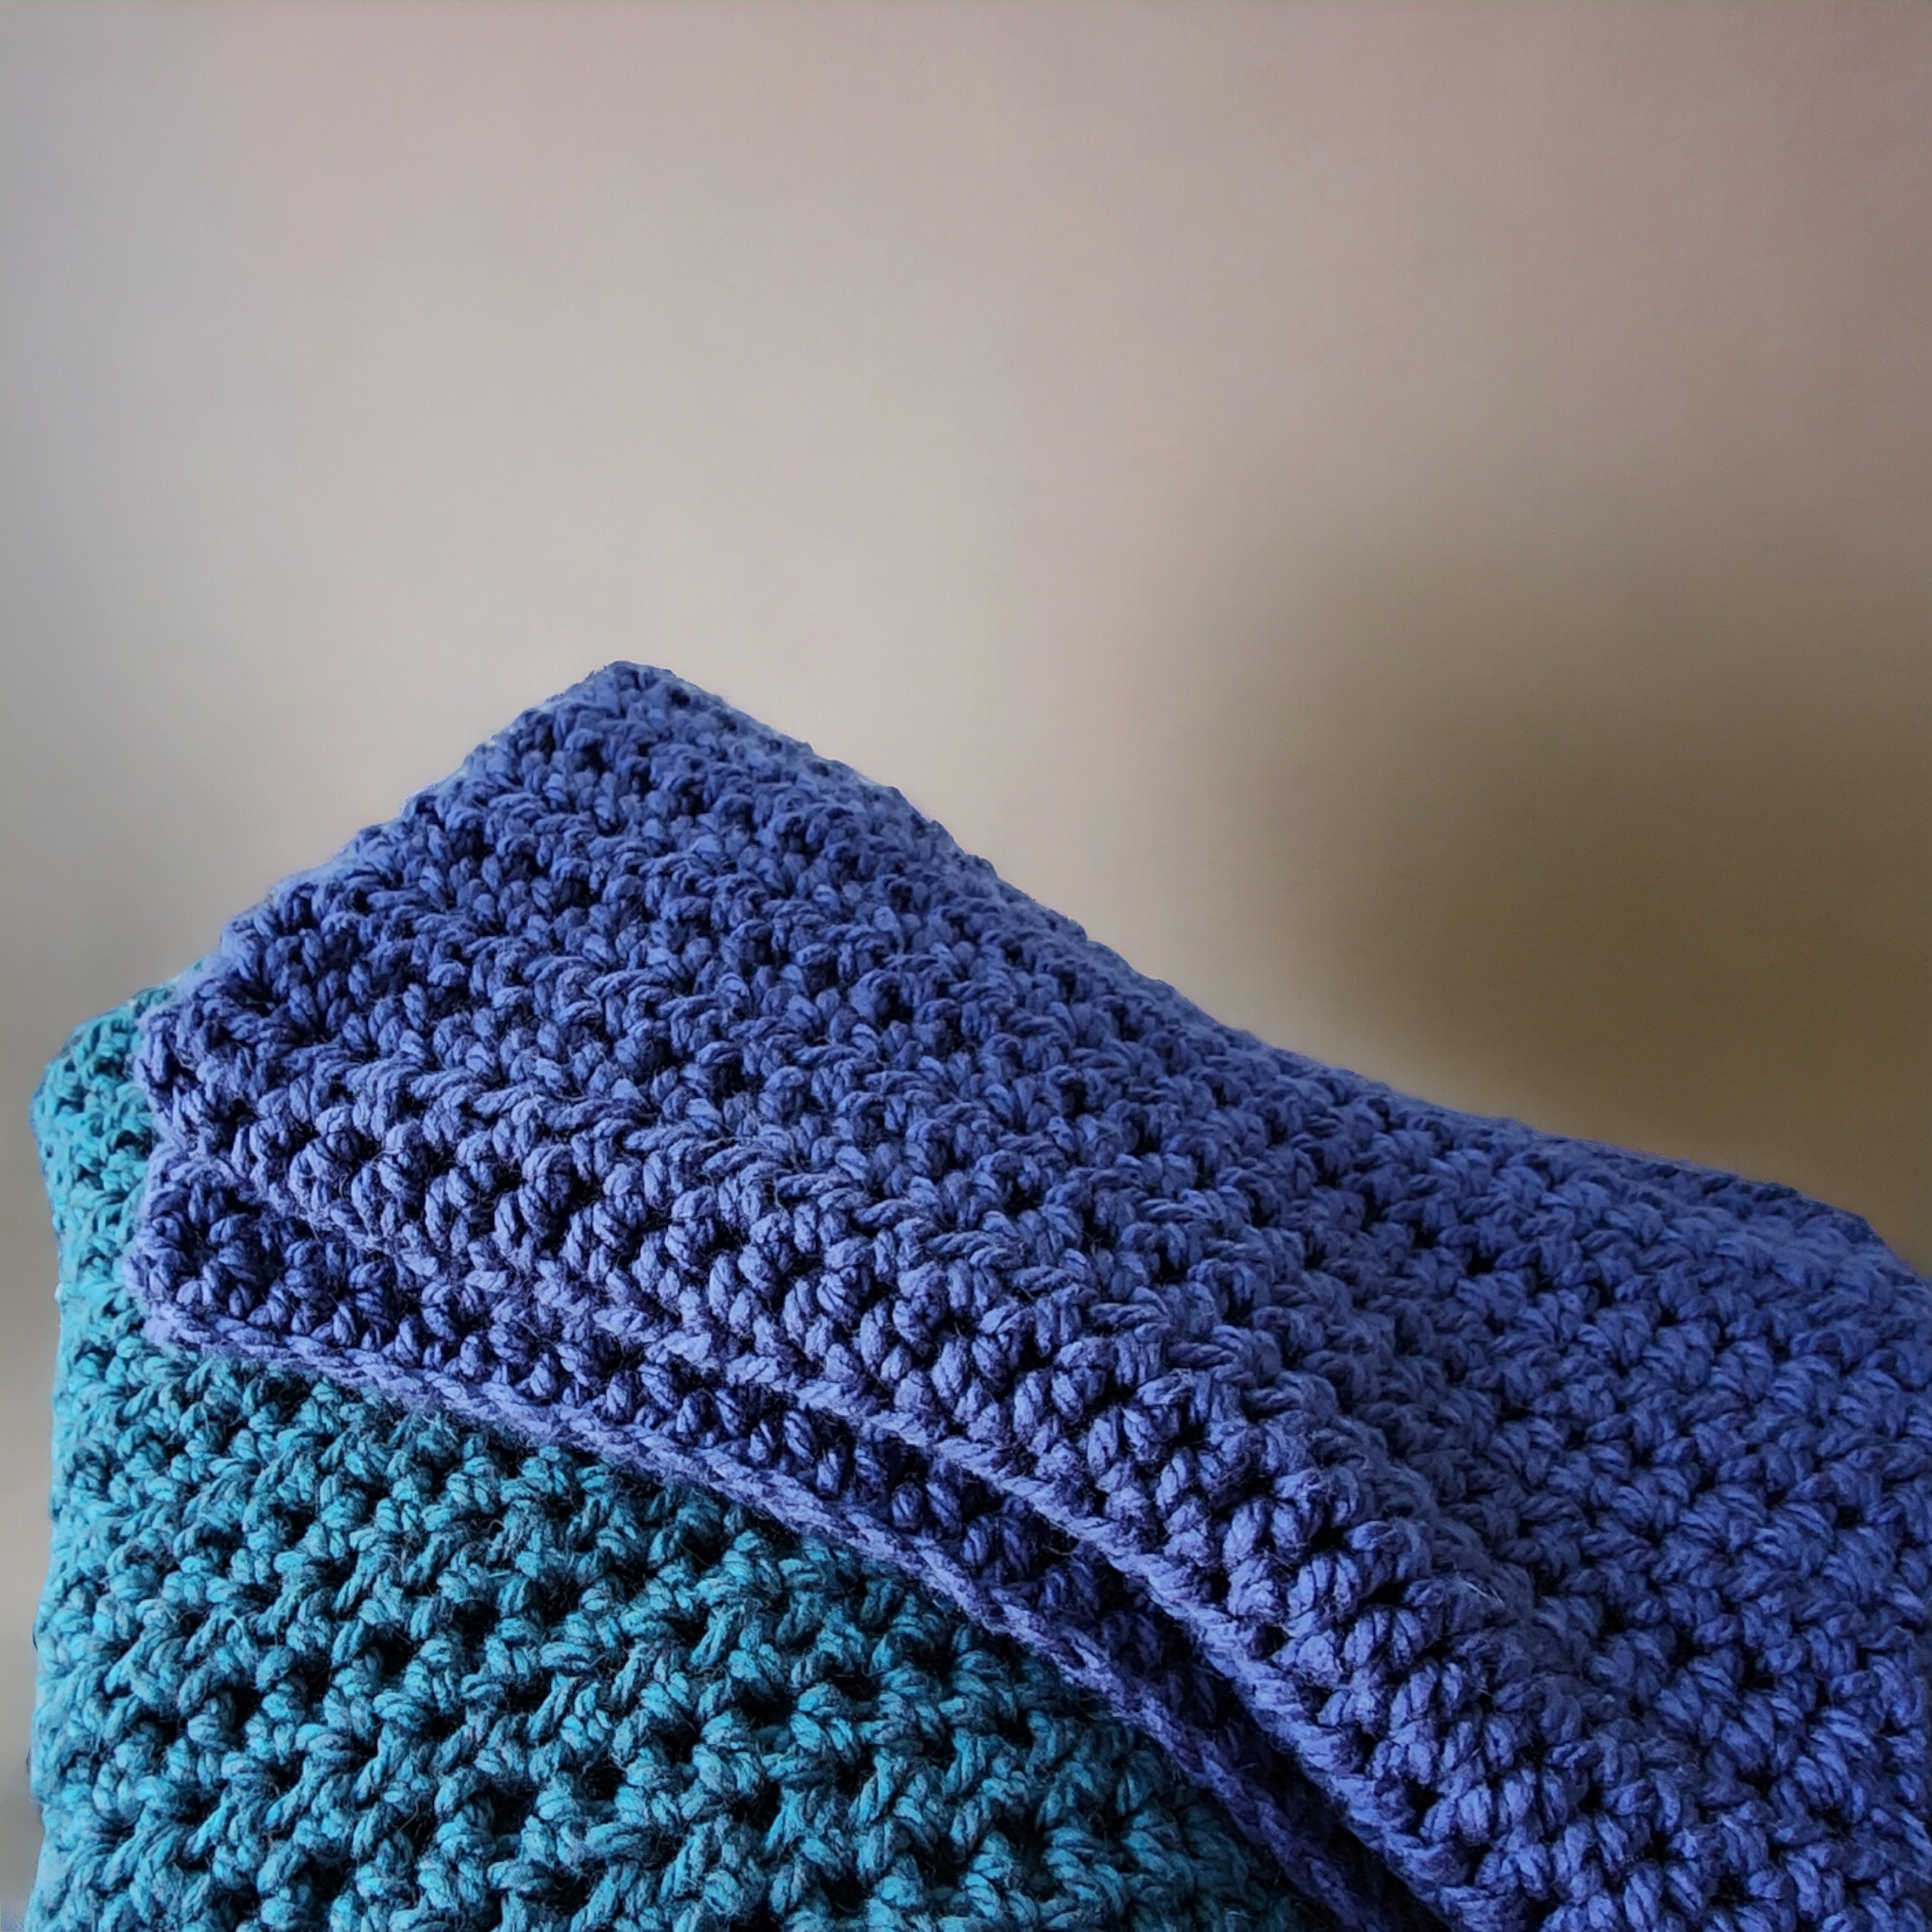 Crochet Lap Blanket